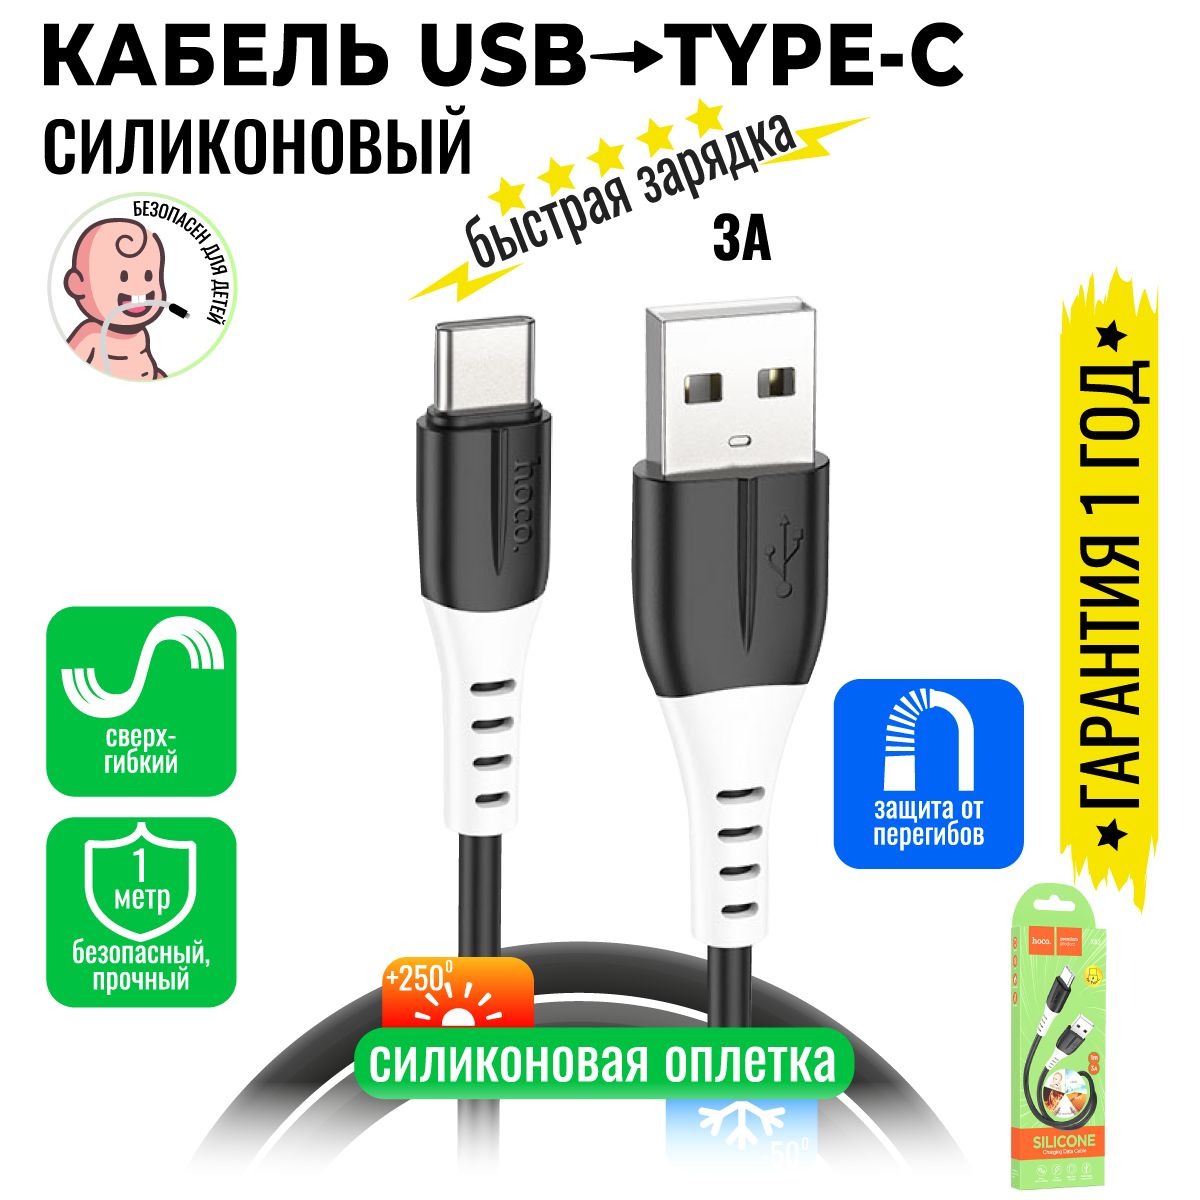 hocoКабельдлямобильныхустройствUSBType-C/USB2.0Type-A,1м,черный